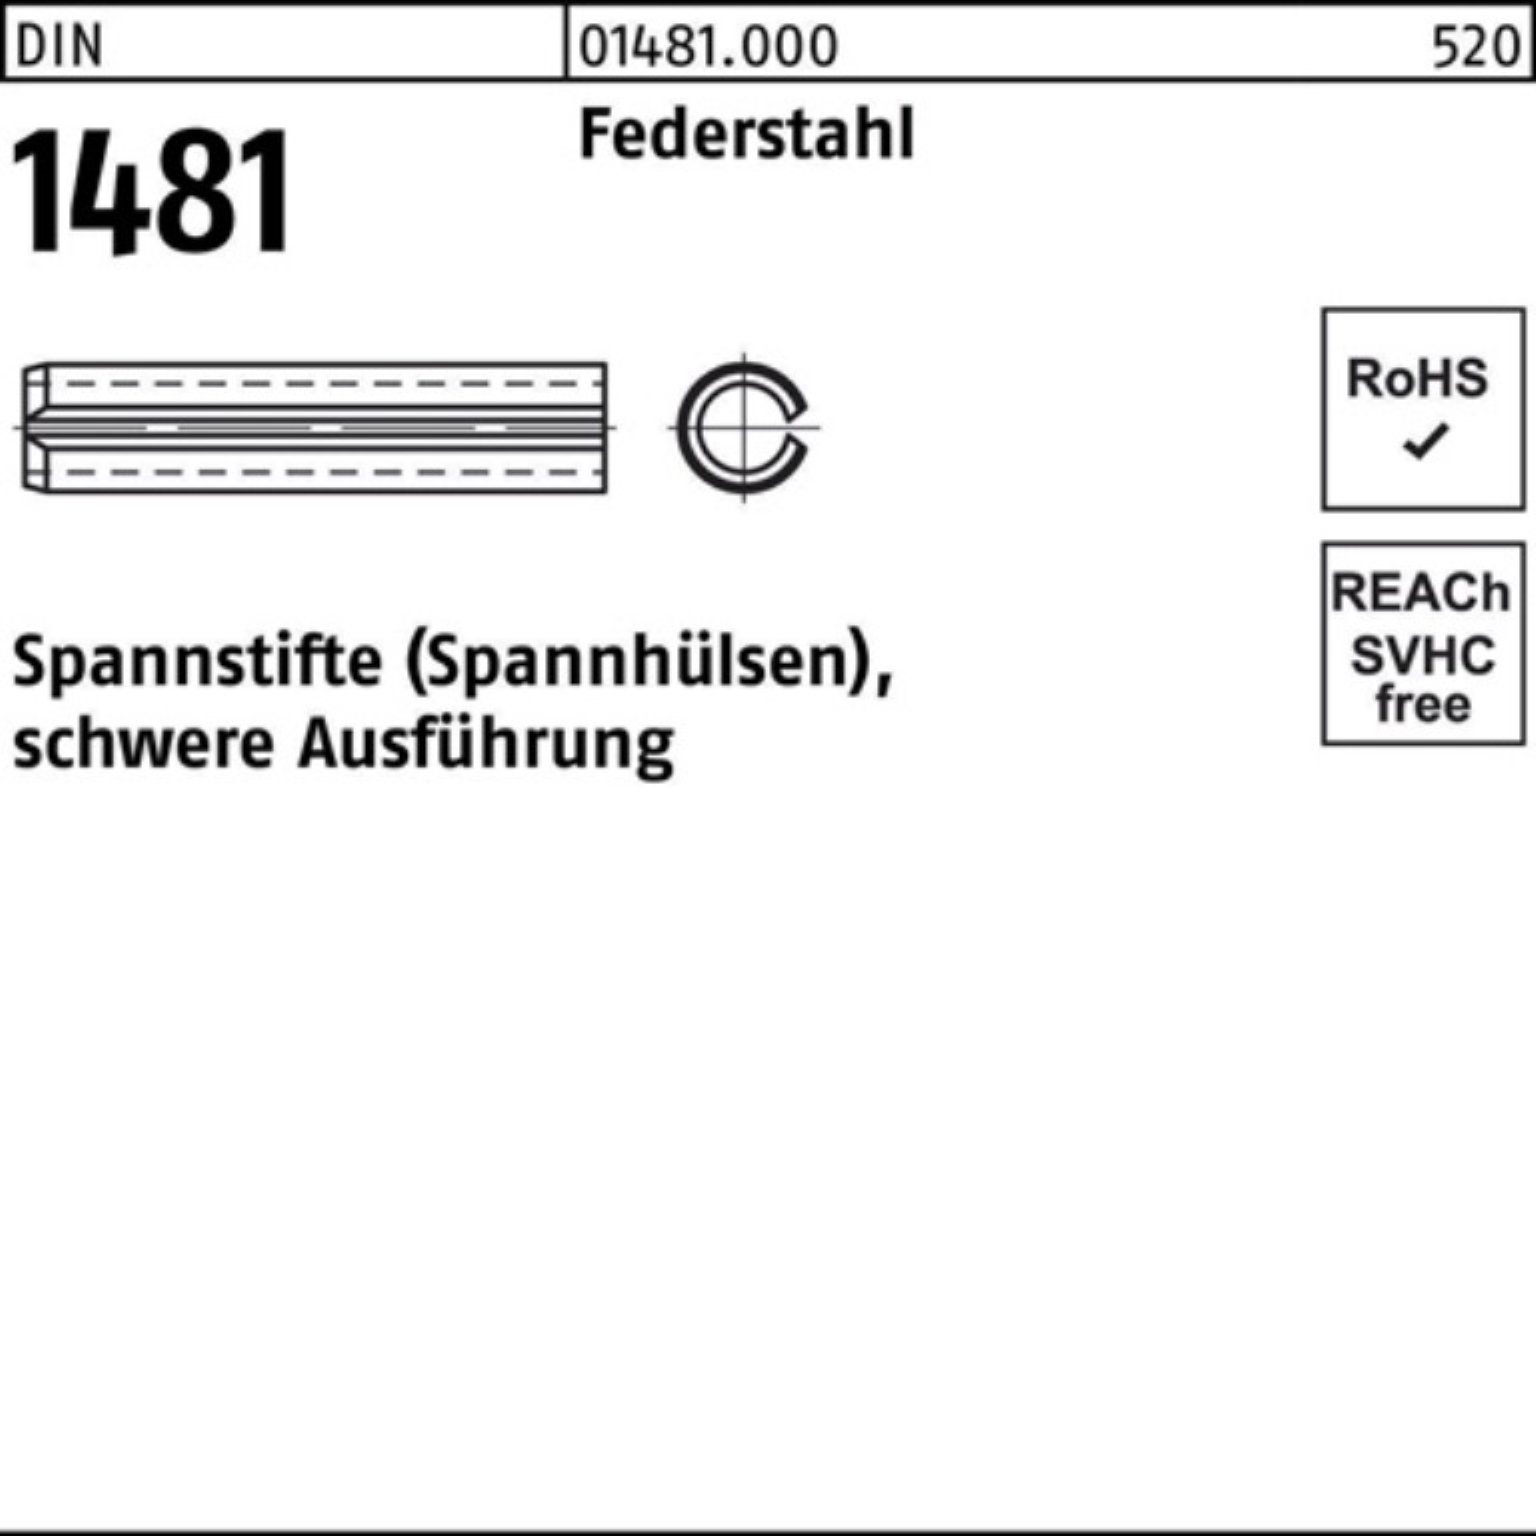 1,5x Spannstift Spannstift 1481 1000er schwere Ausführung Federstahl Reyher Pack 5 DIN